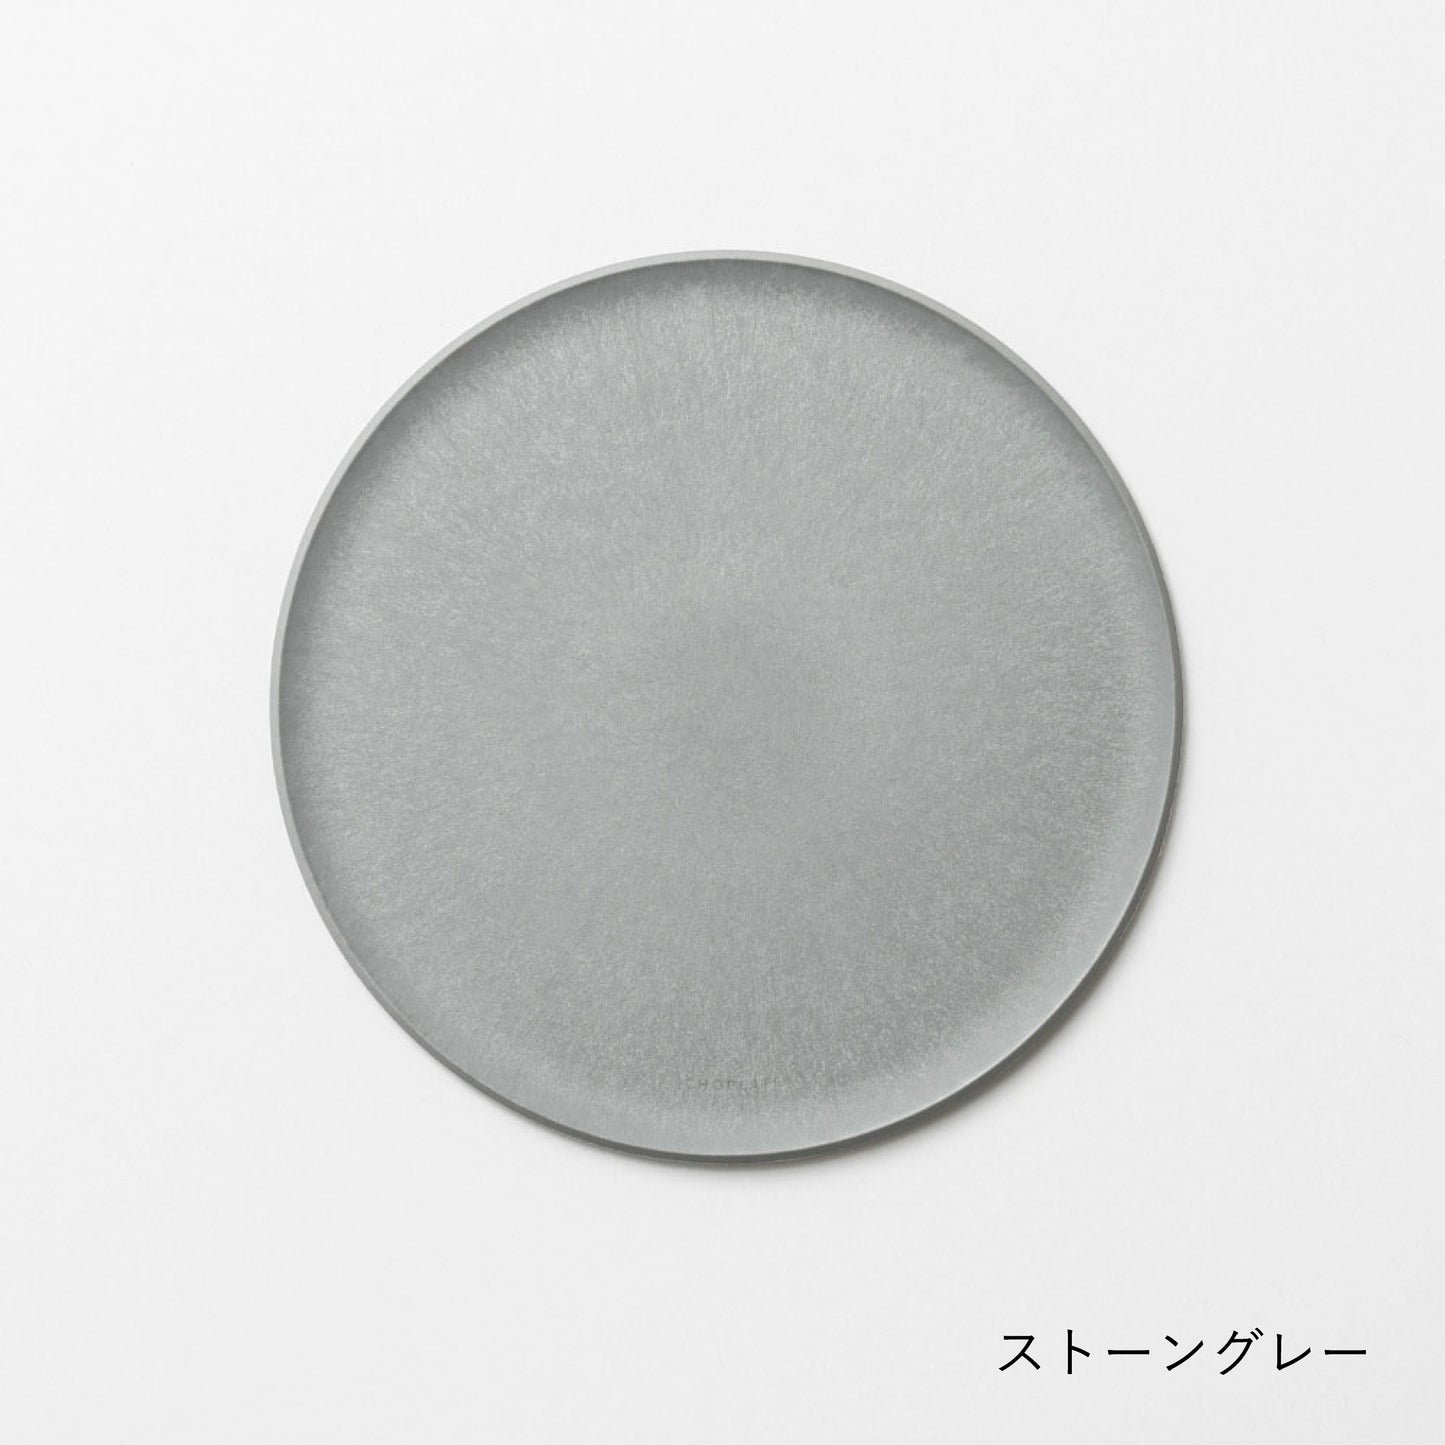 CHOPLATE｜Cutting Board Plate L (260mm / StoneGrey)